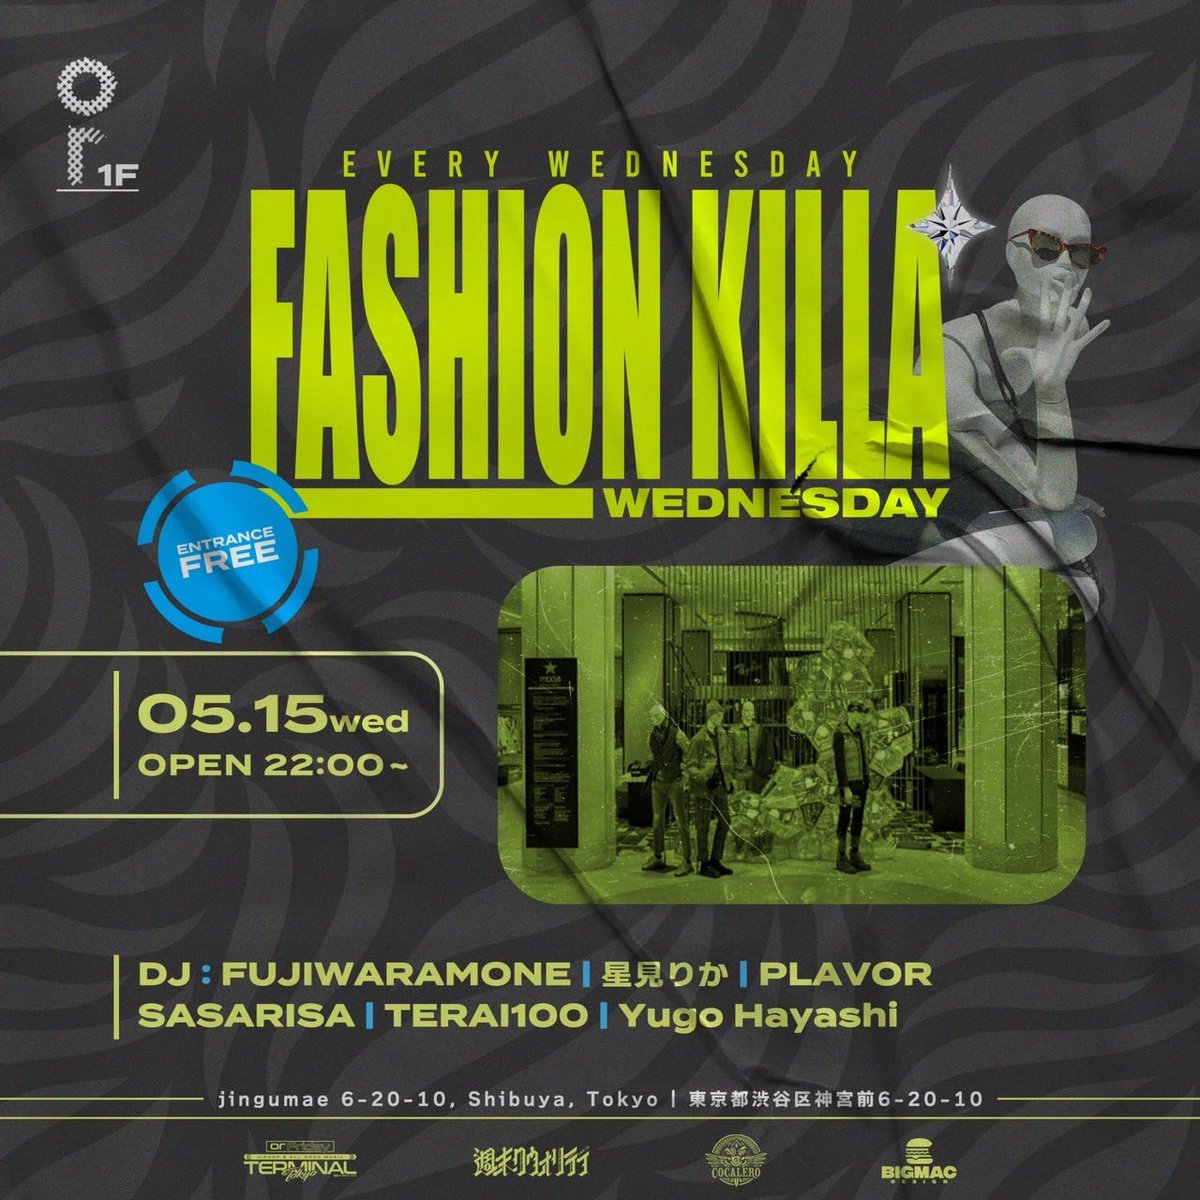 今夜DJ! 5/15 WED Fashion Killa’ Wednesday @ortokyoofficial 1F 22:00- Entrance Free!! DJ : FUJIWARAMONE 星美りか PLAVOR SASARISA TERAI100 Yugo Hayashi